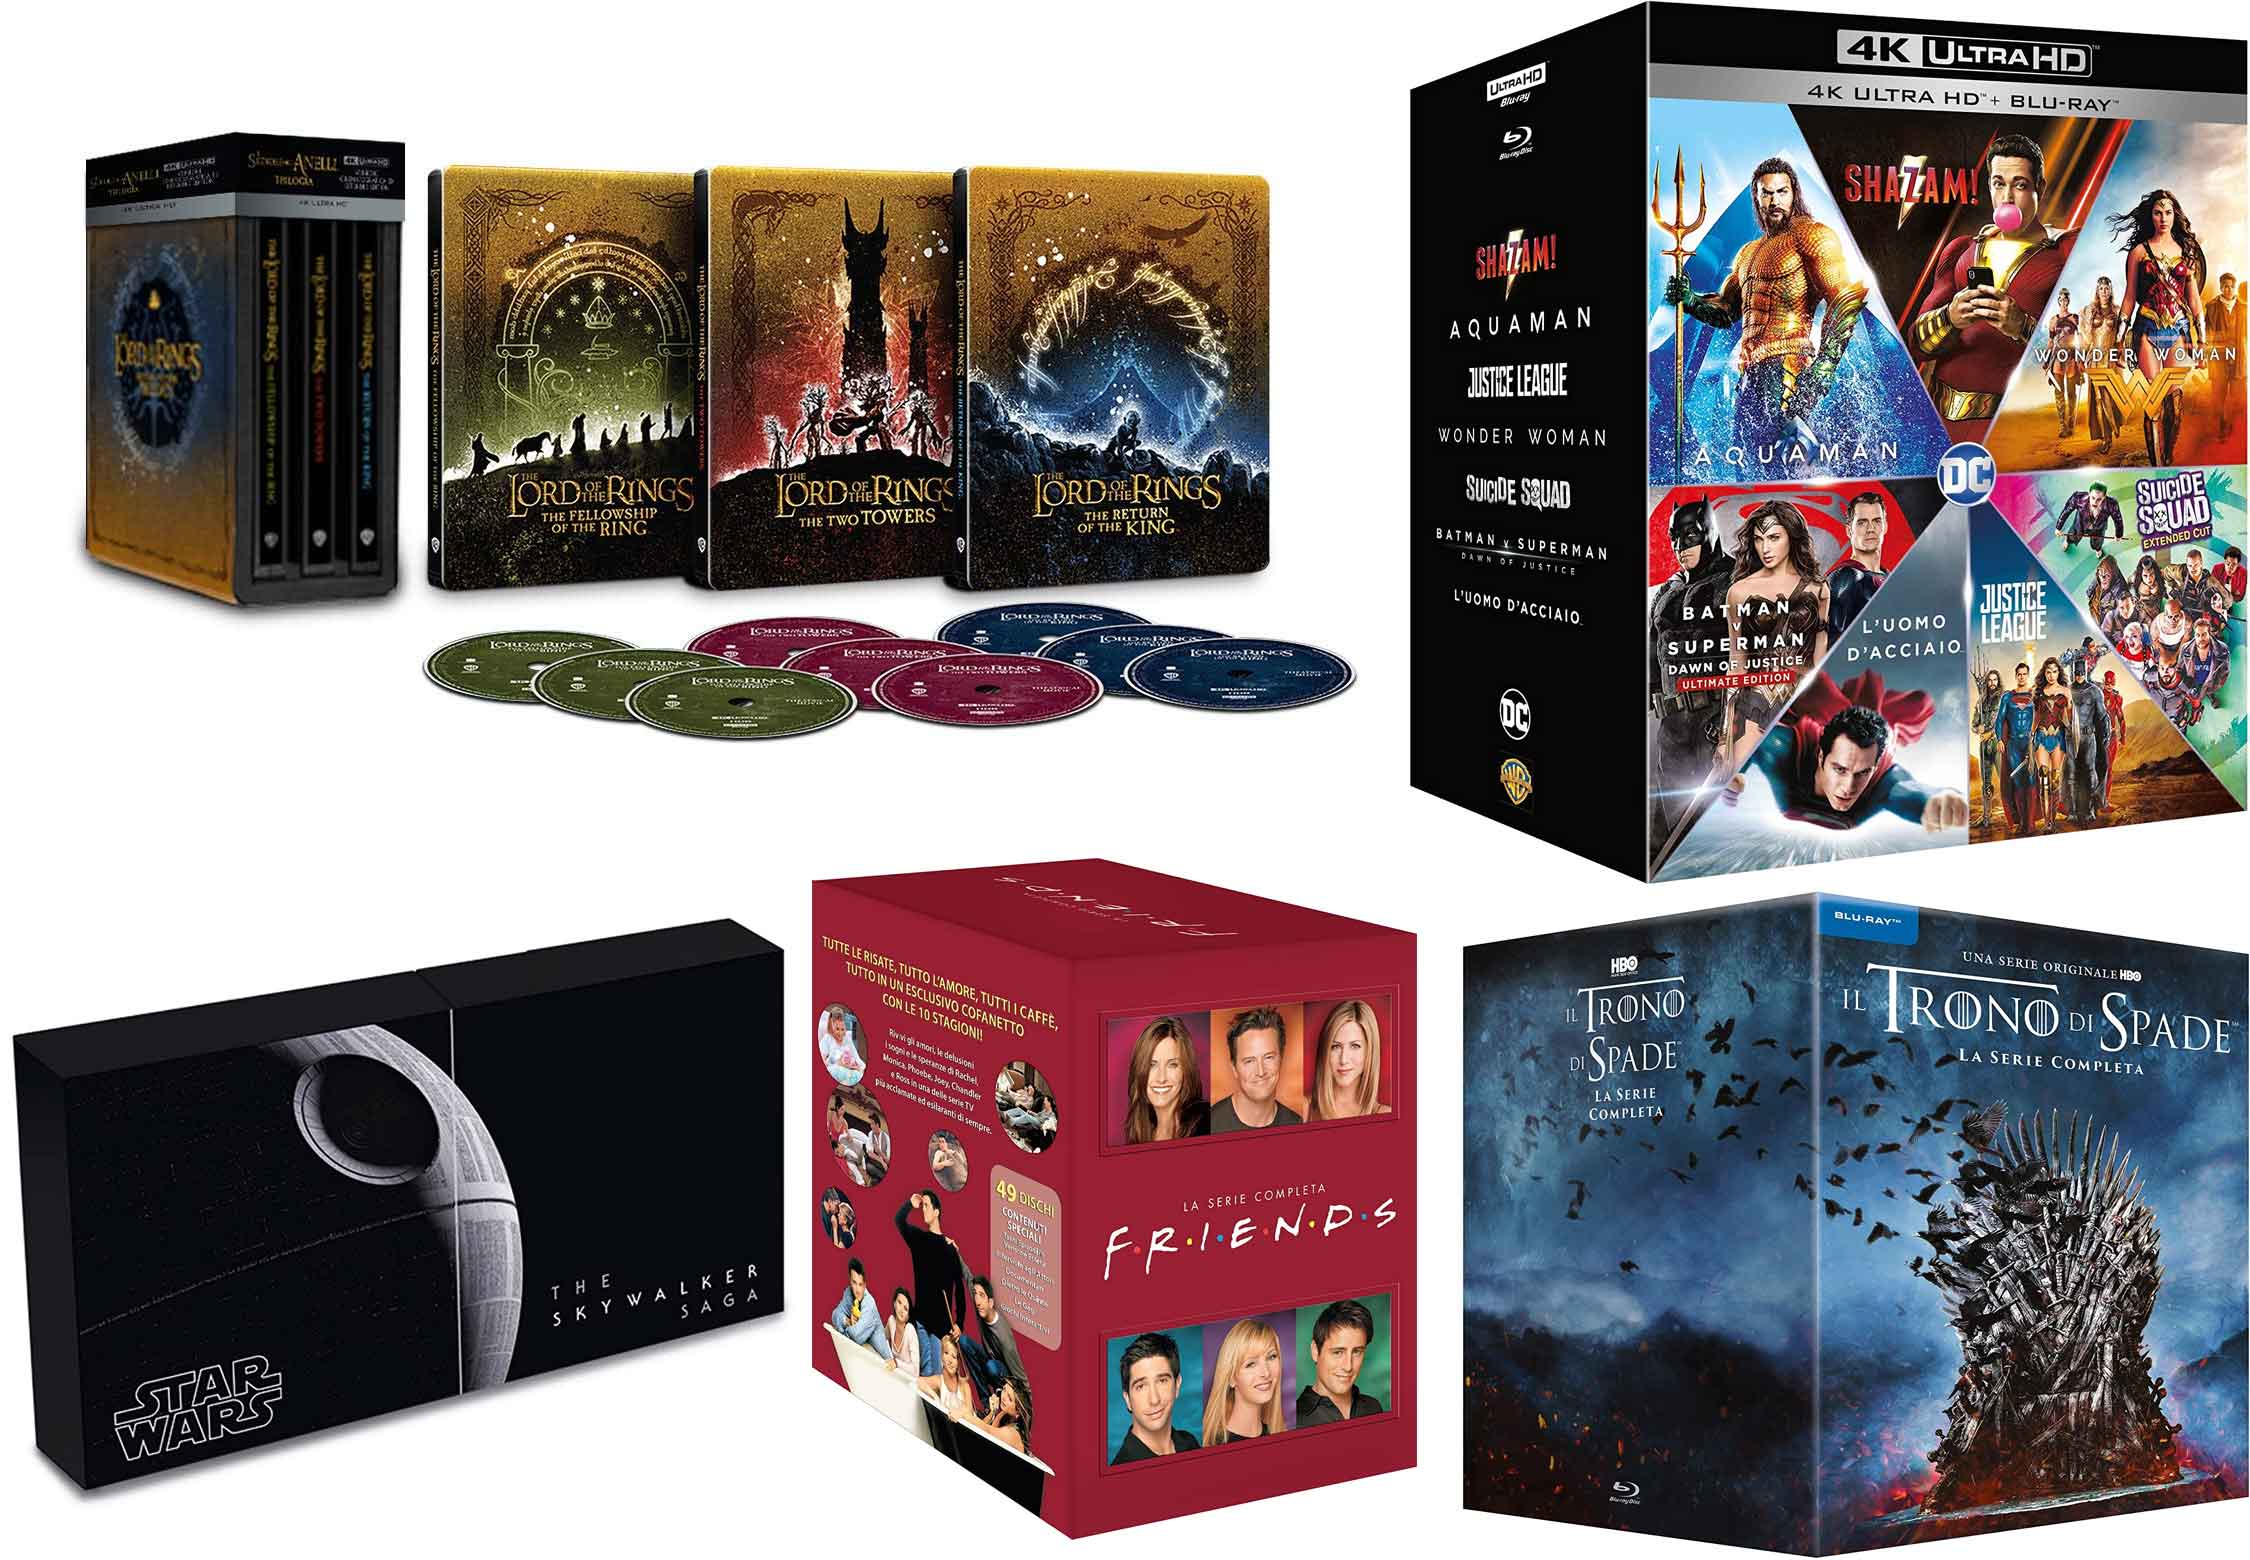 Prime Day: offerte Blu-ray DVD Il Signore degli Anelli steelbook 4k